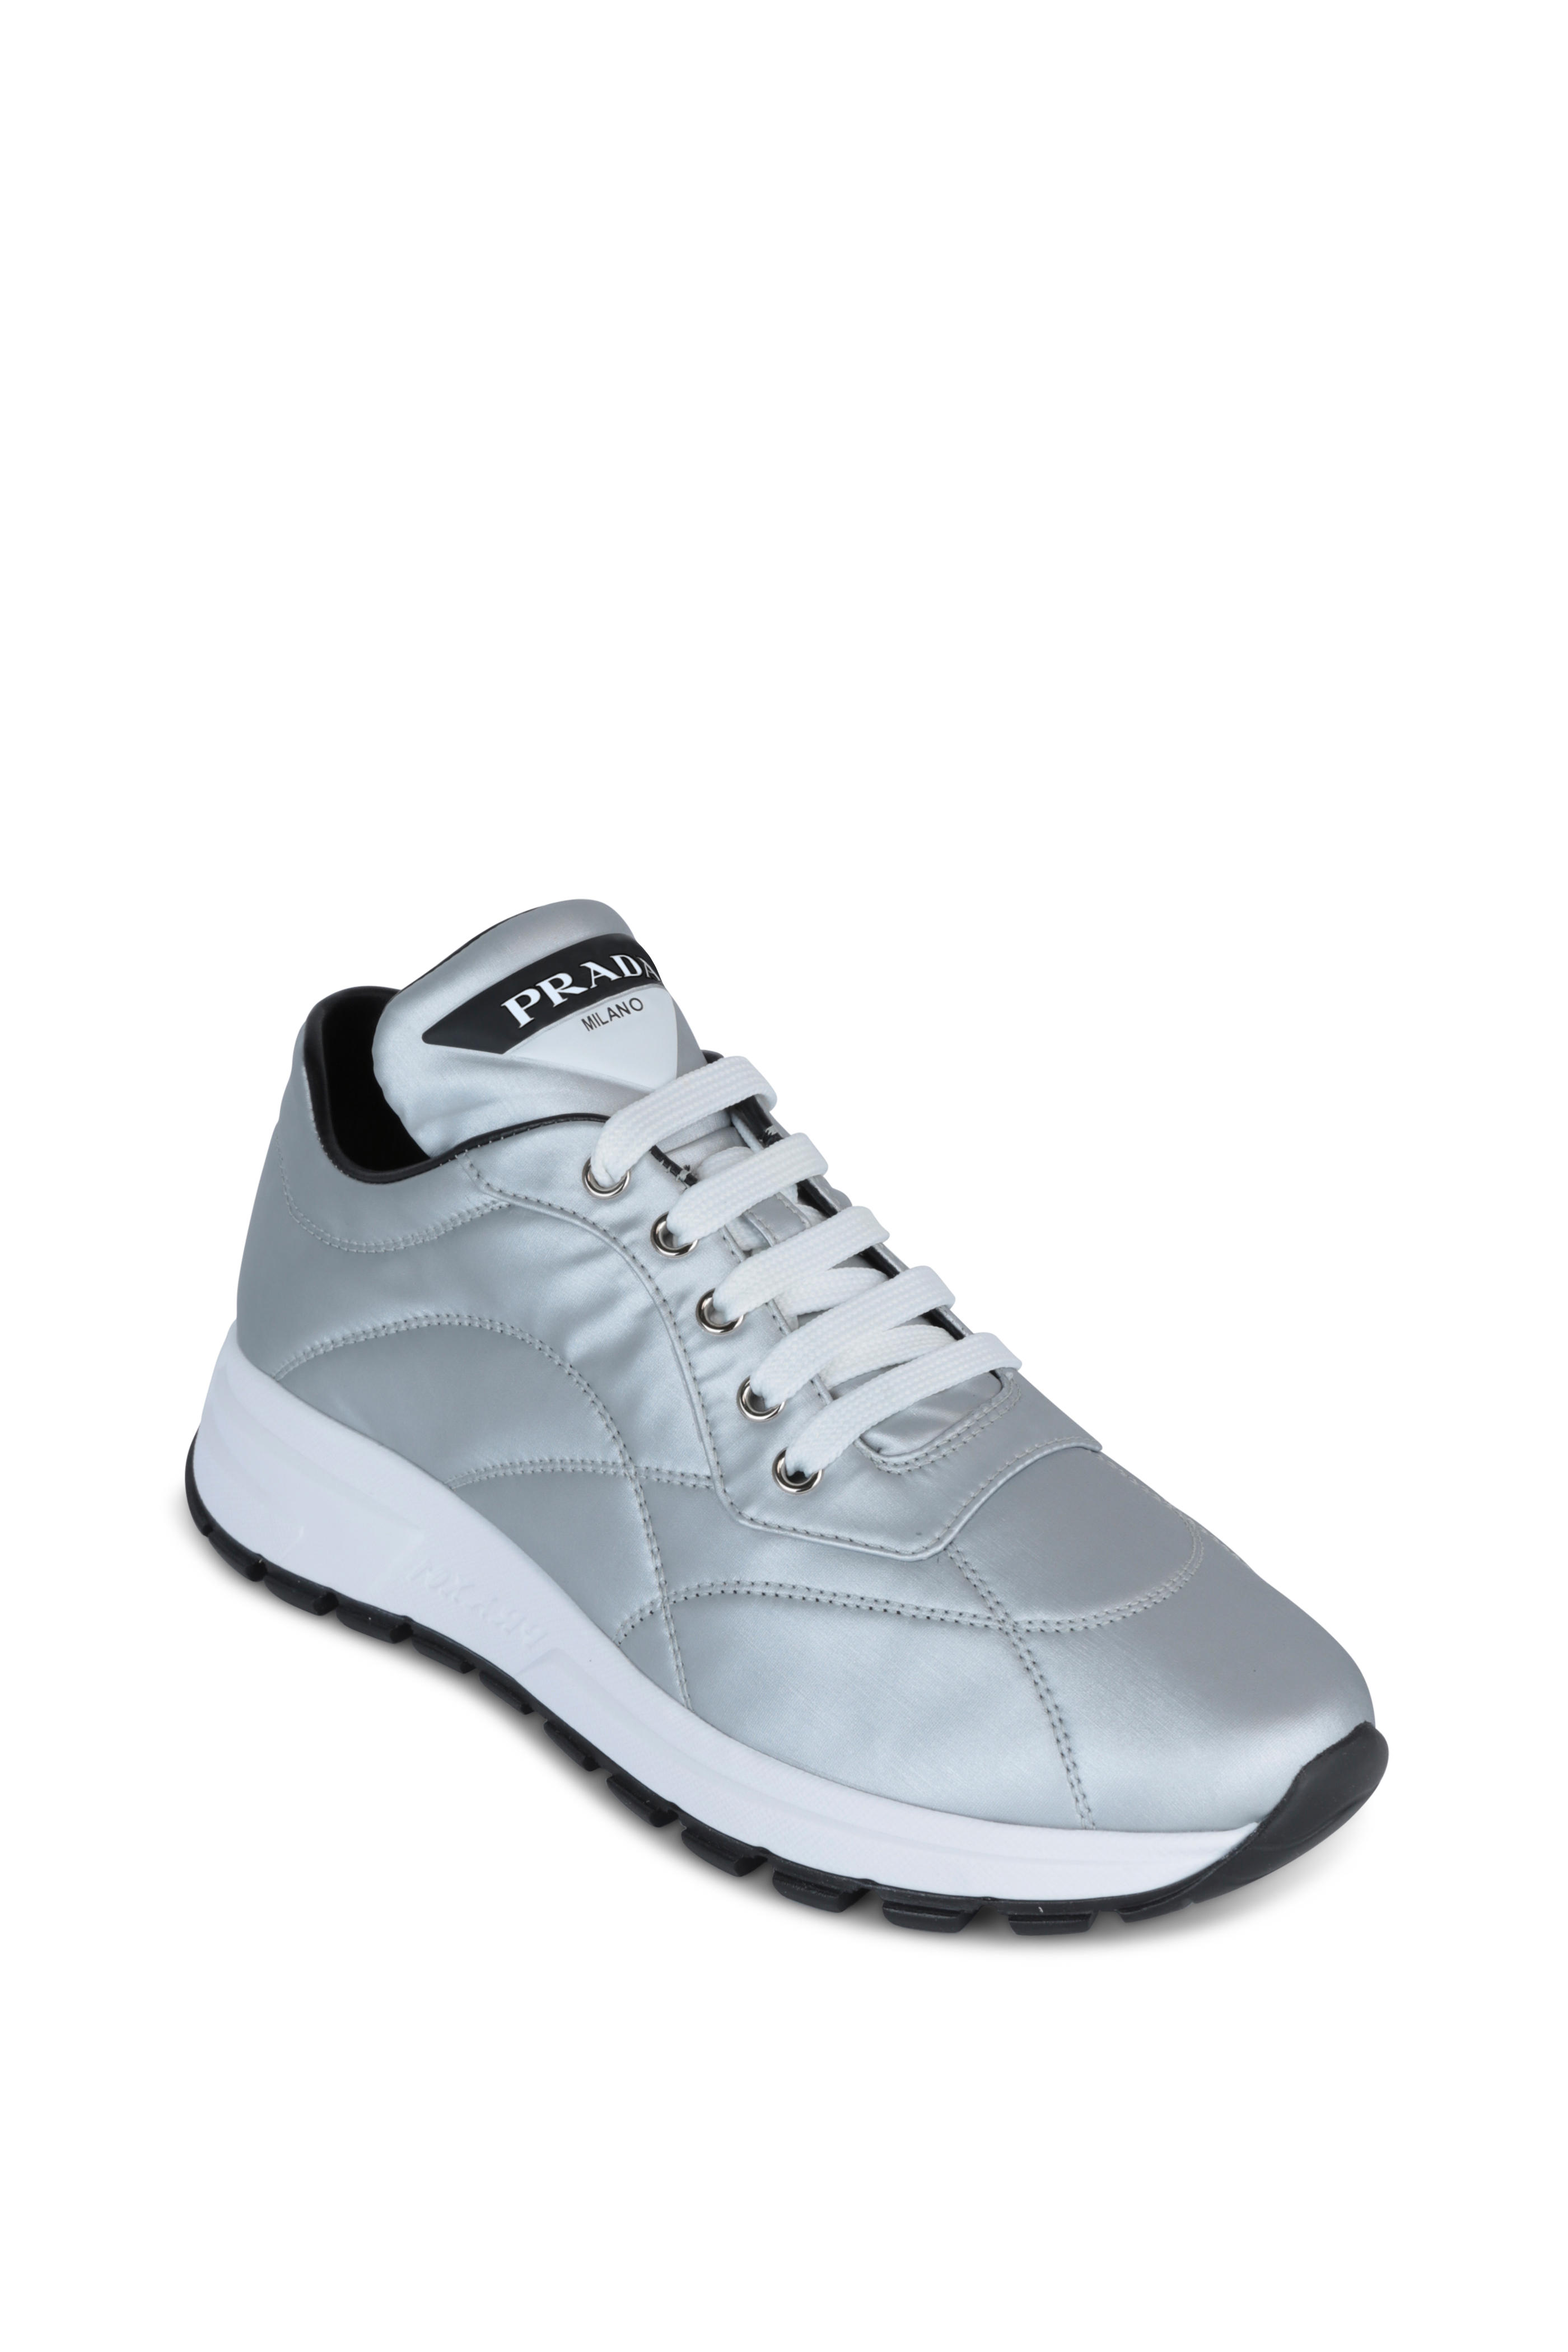 prada silver sneakers